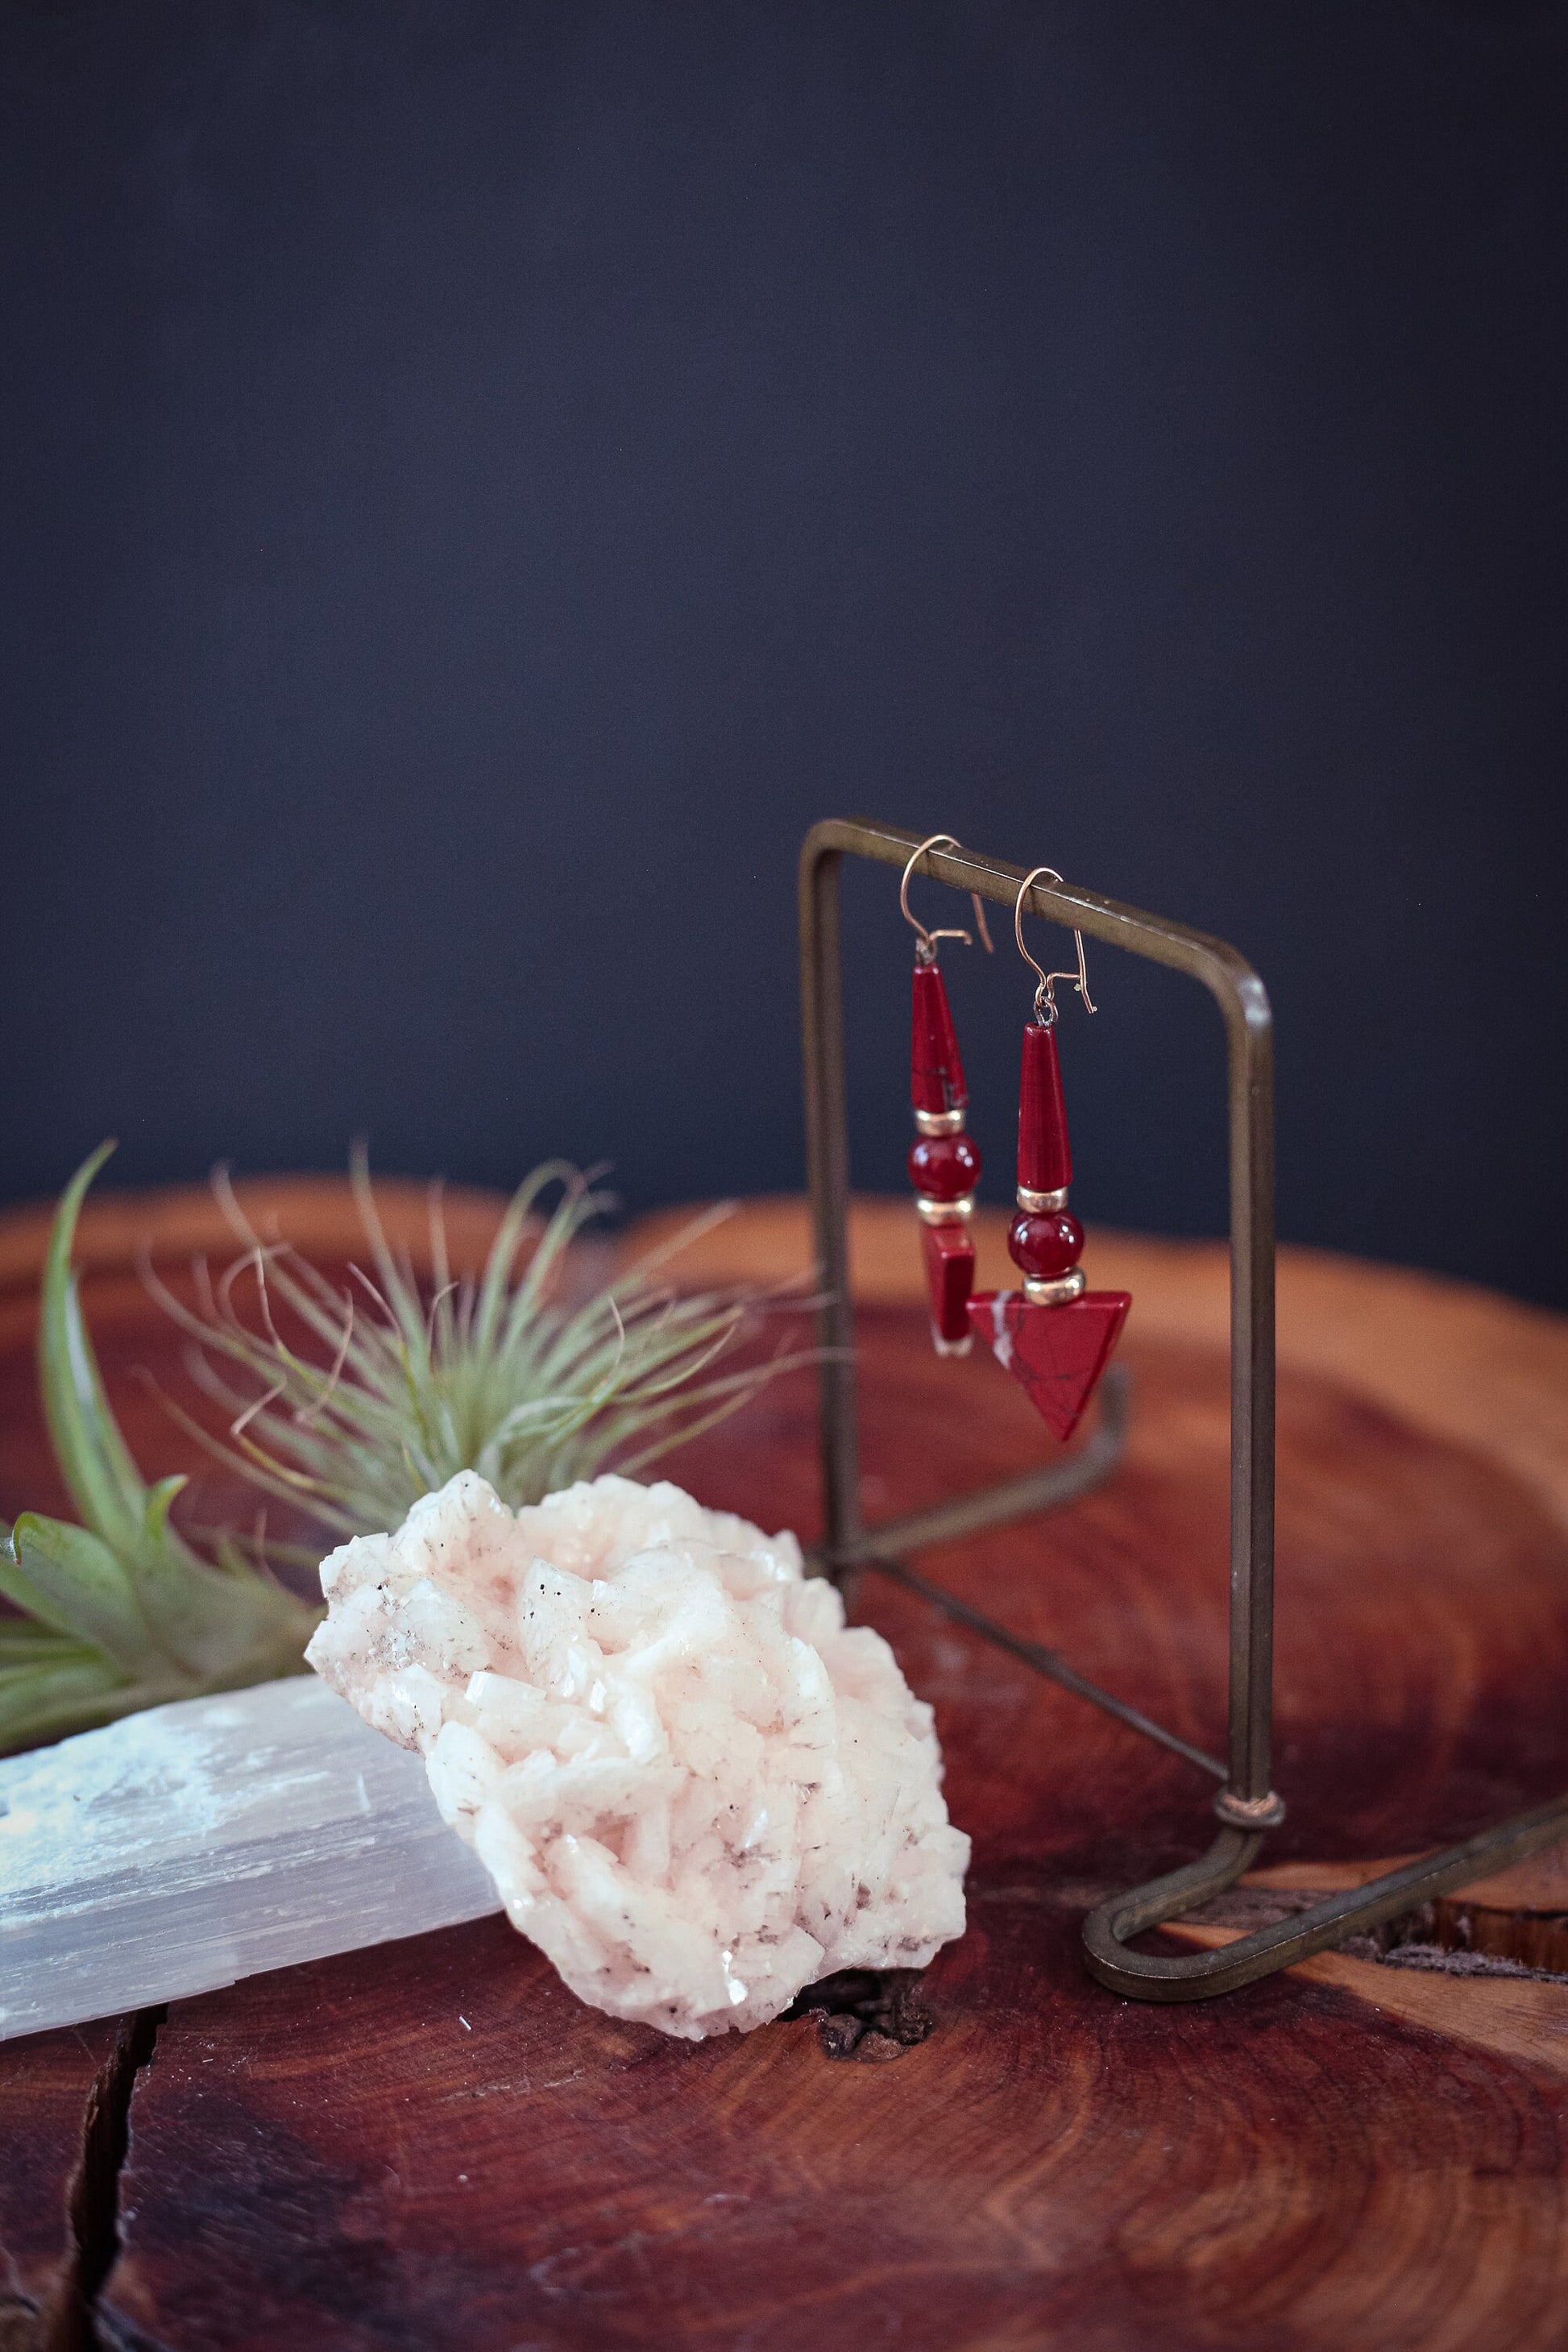 Carnelian & Red Jasper with Gold Bead Drop Earrings 14K Gold Filled Kidney Hook - Vintage Estate Earrings